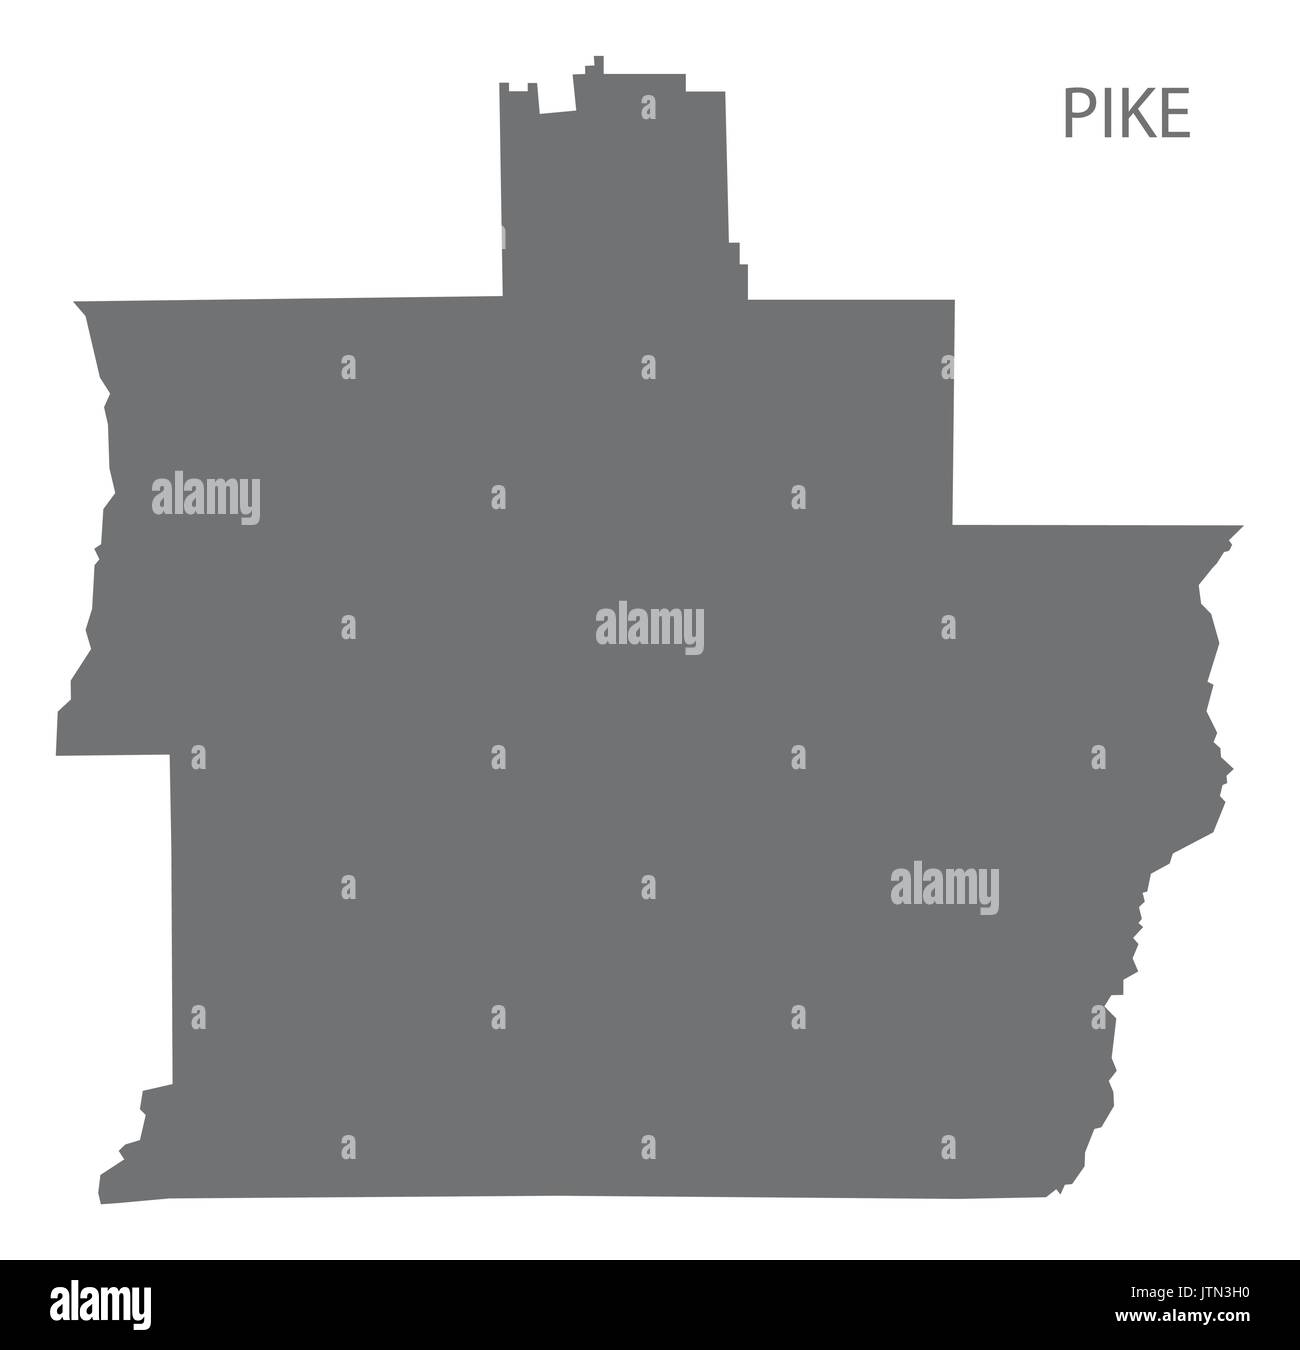 Pike county map di Alabama USA grigio silhouette di illustrazione Illustrazione Vettoriale